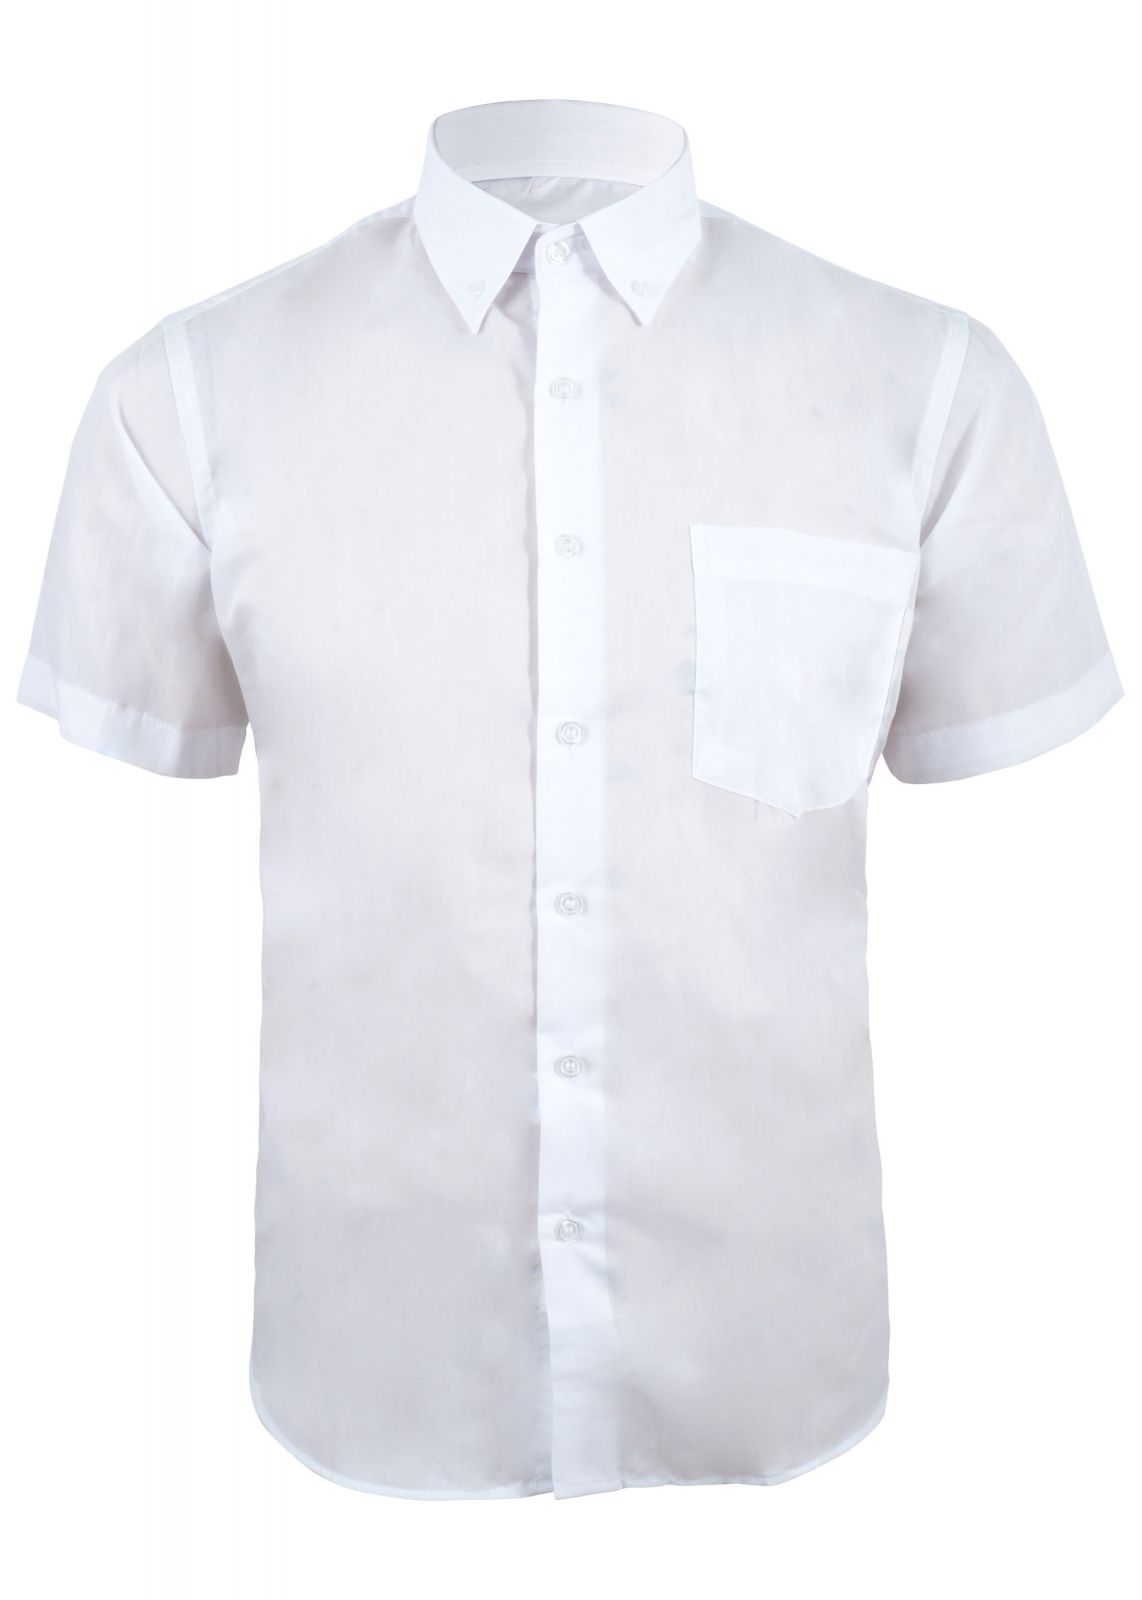 Ανδρικό πουκάμισο κοντό μανίκι & τσεπάκι. Βasic Collection ΛΕΥΚΟ